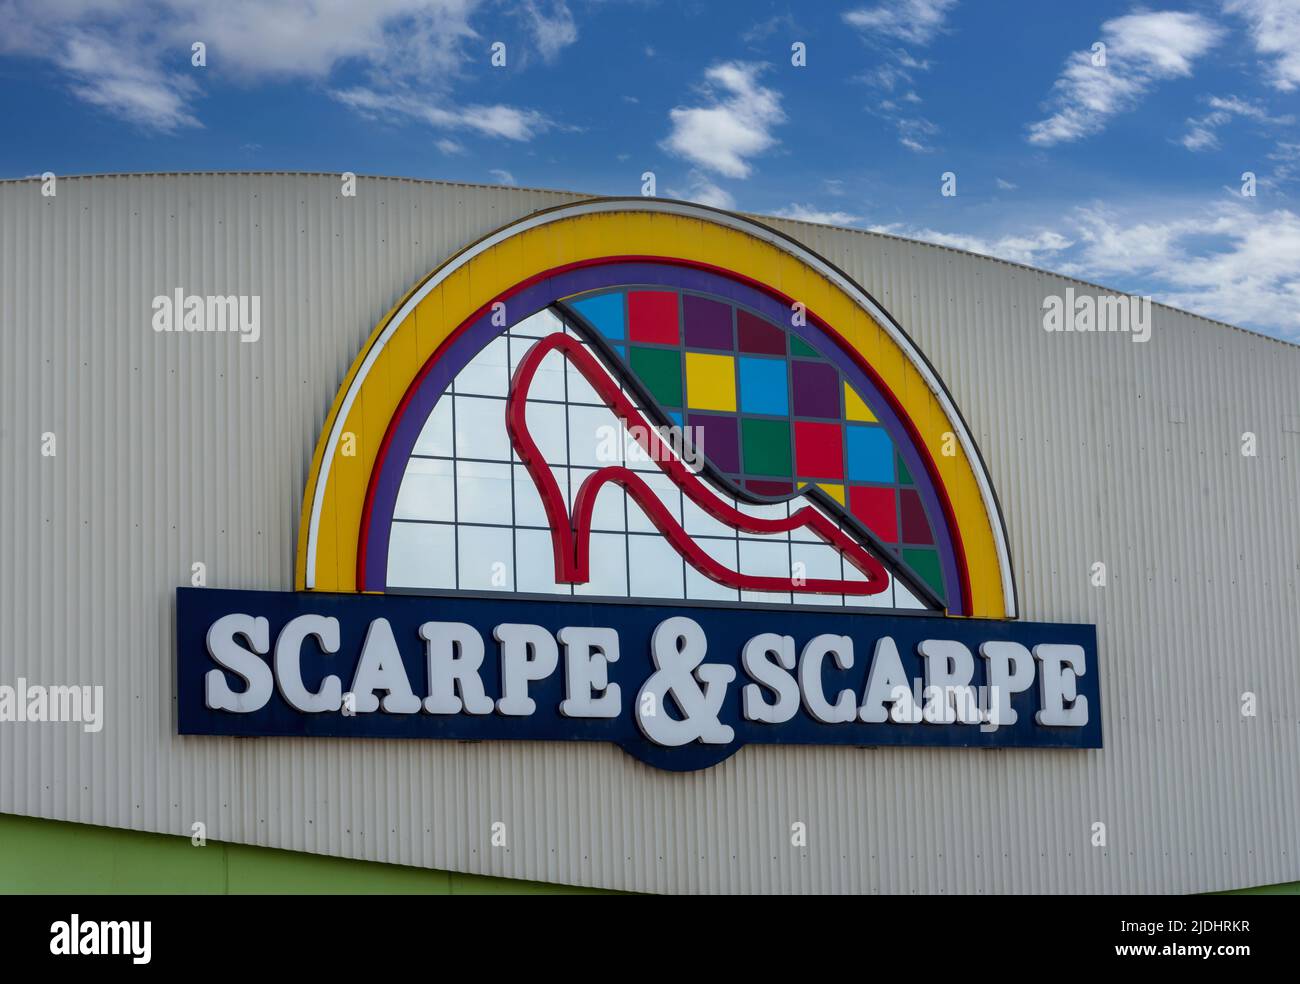 Cuneo, Italien - 03. Juni 2022: Zeichen des Scarpe&Scarpe-Logos im Shop ist Scarpe e Scarpe das führende italienische Unternehmen im Bereich der großen Vertriebsschuhe Stockfoto